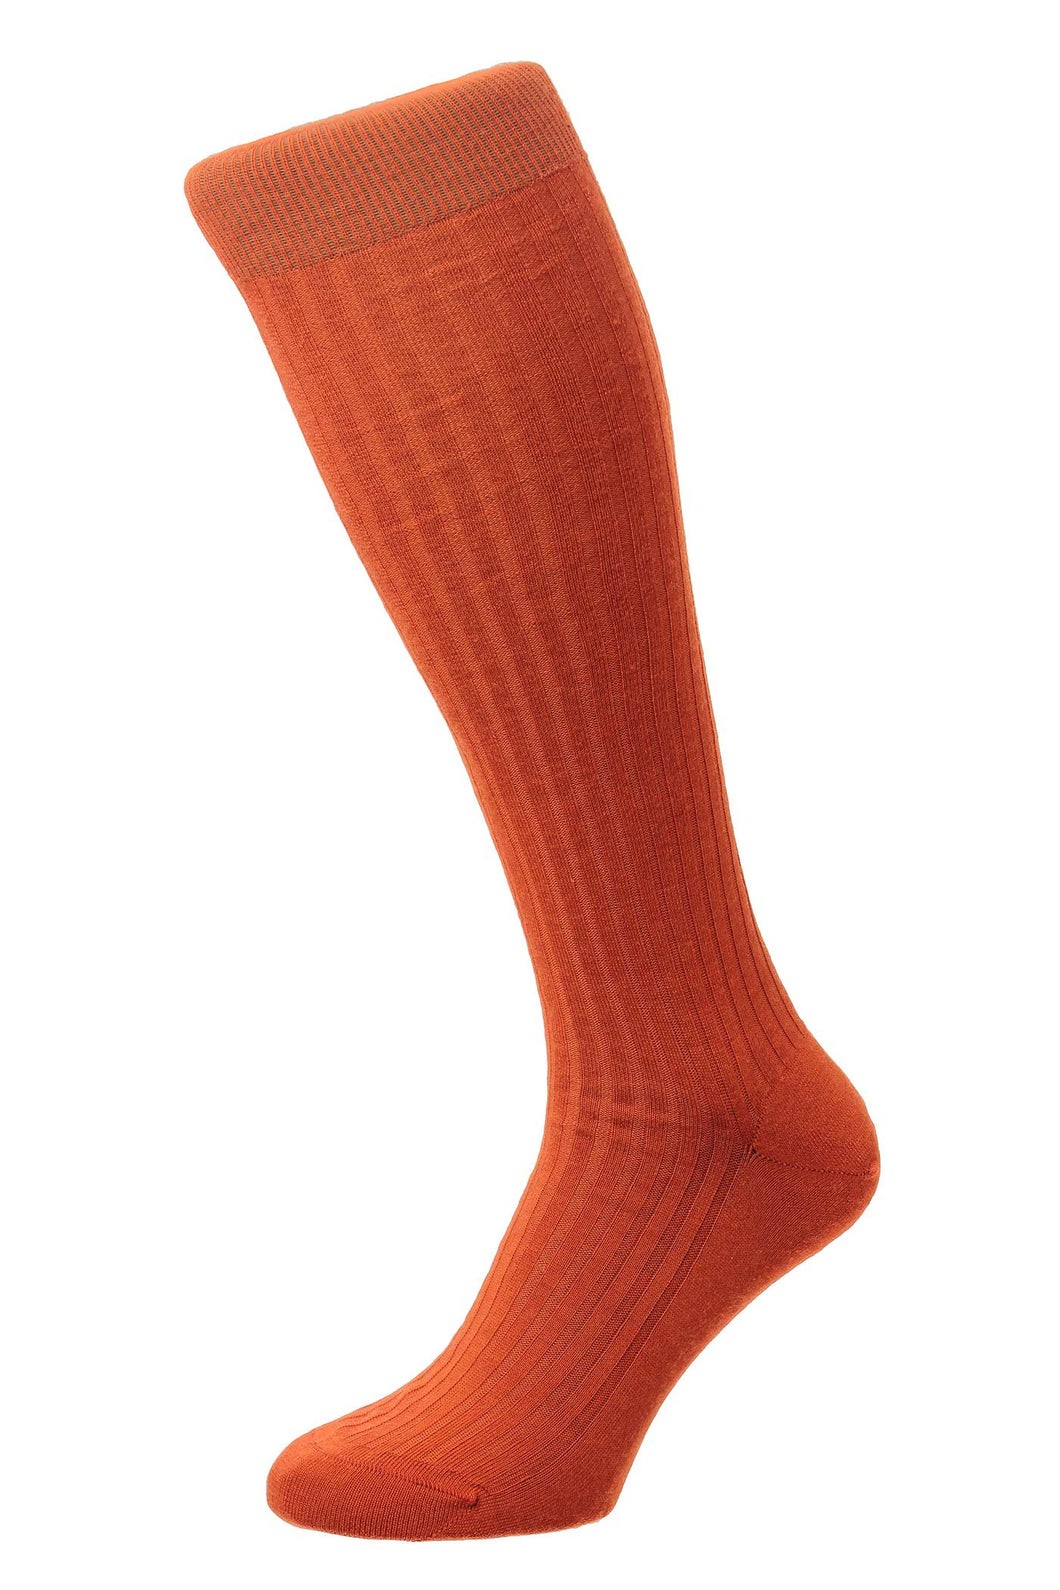 Pantherella Socks (Orange)